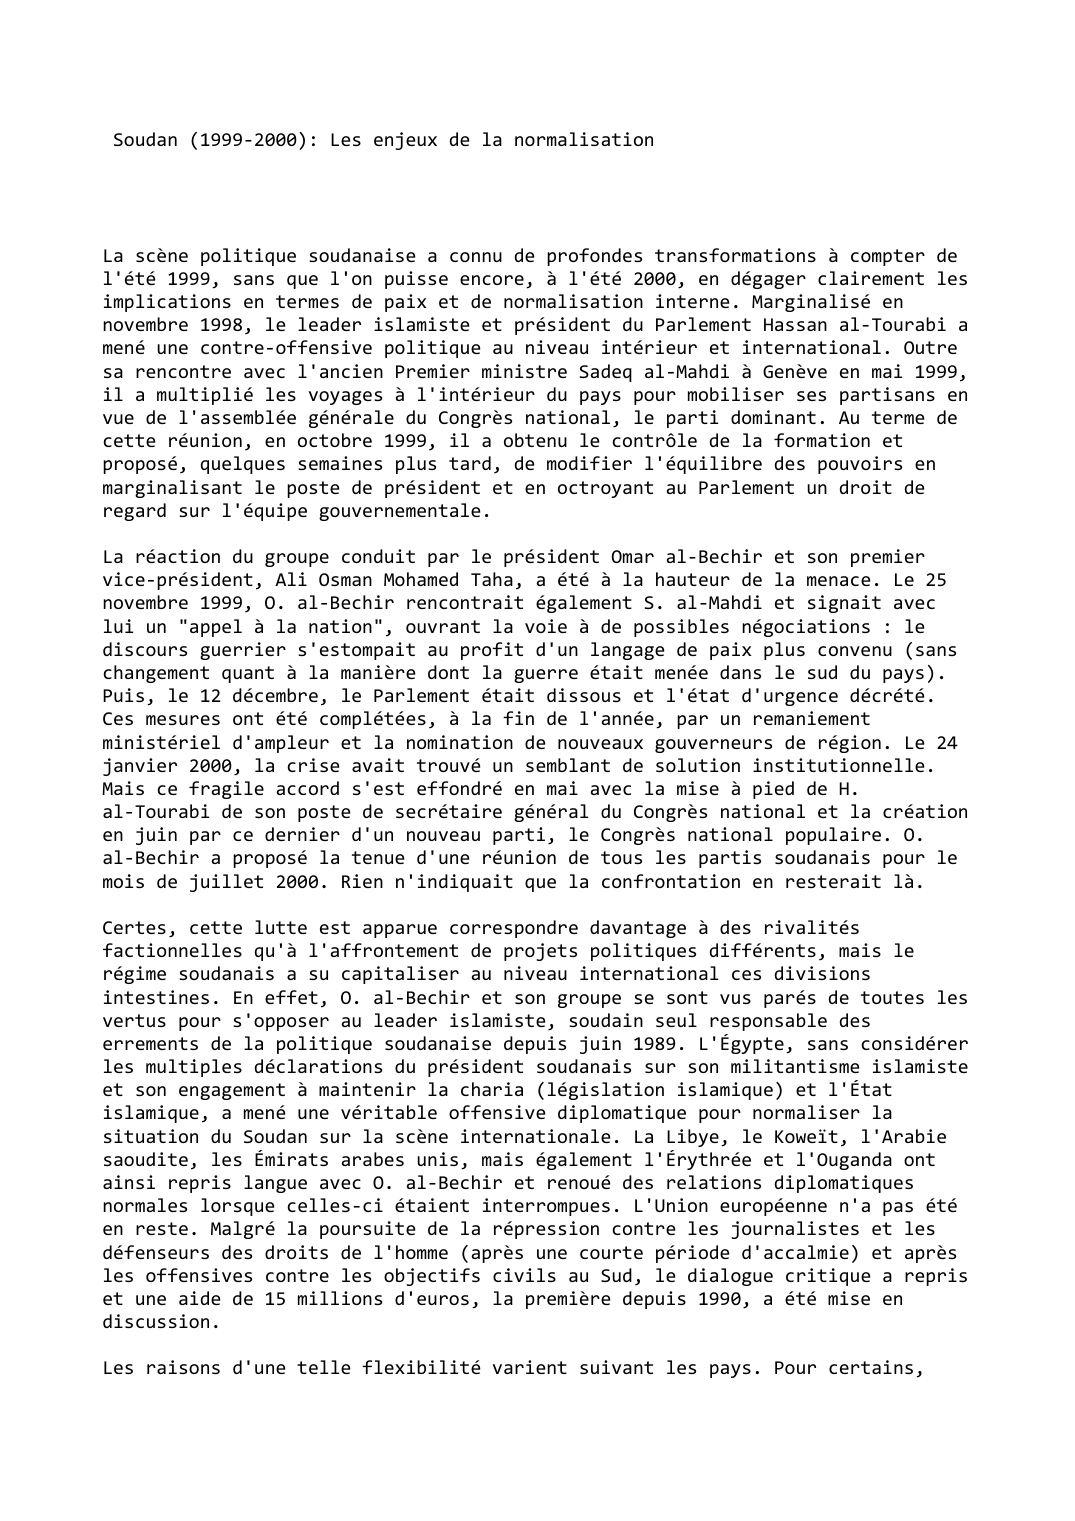 Prévisualisation du document Soudan (1999-2000): Les enjeux de la normalisation